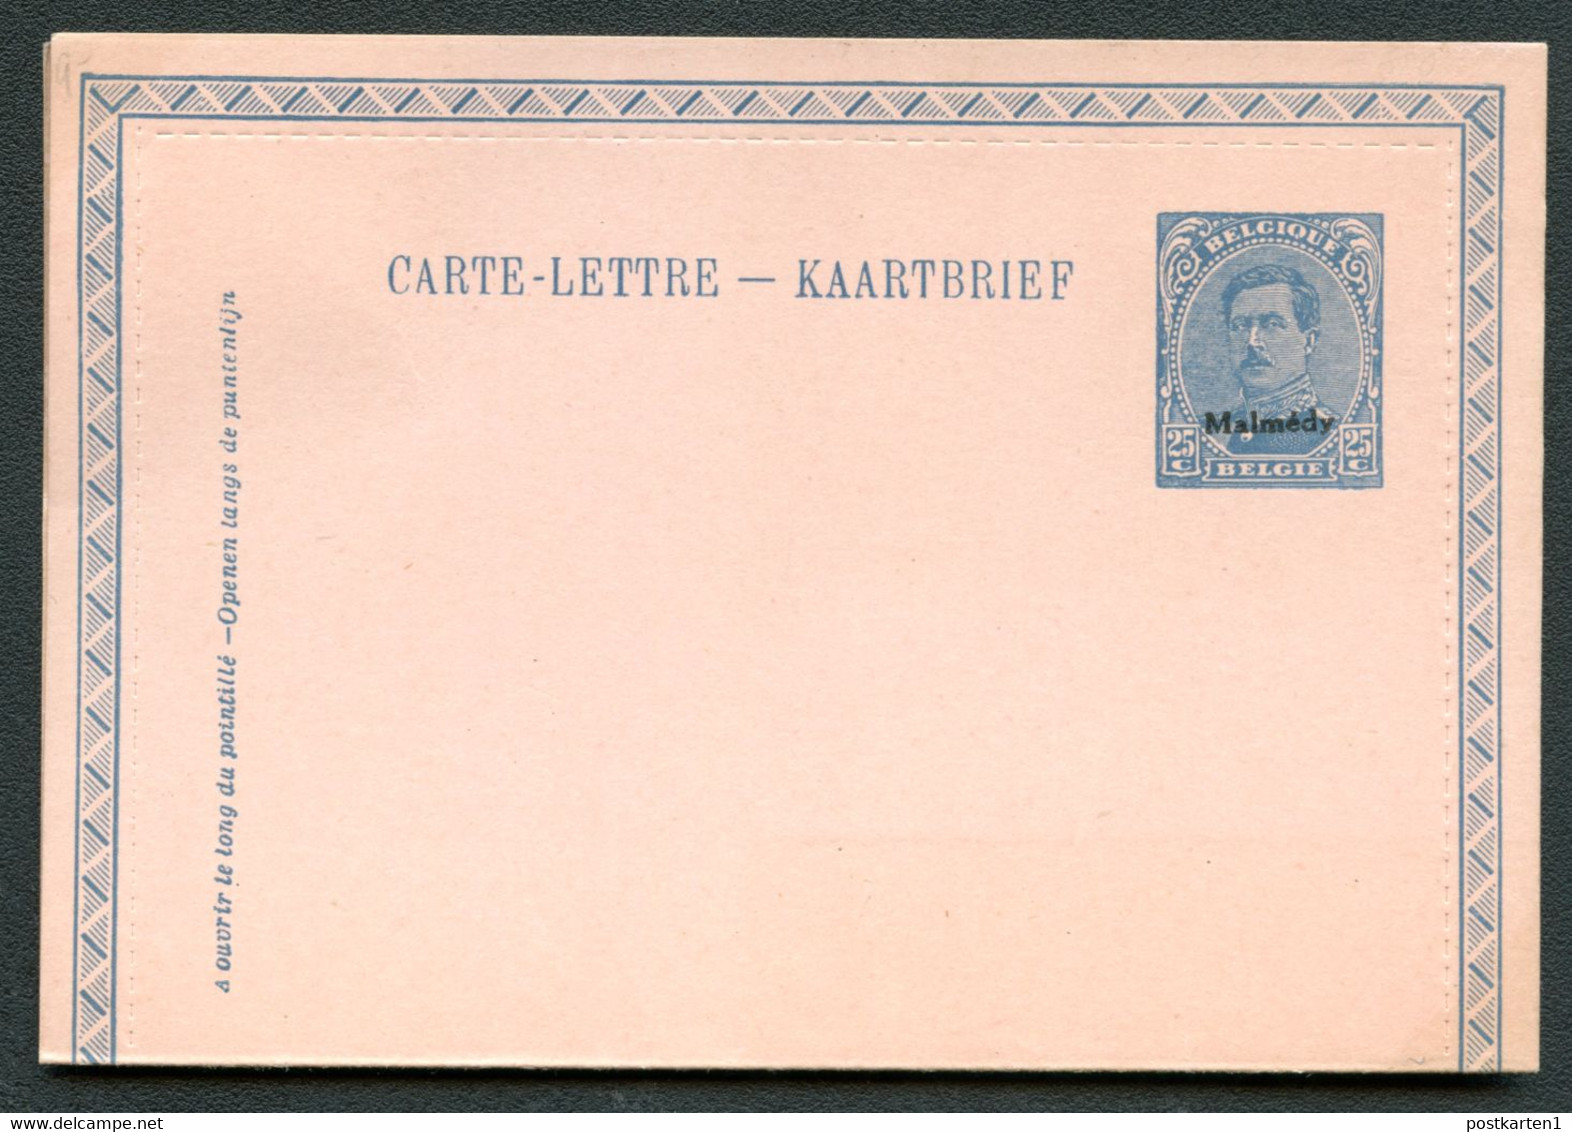 MALMÉDY Carte-lettre KB3 1920 Cat. 20.00 € - Eupen & Malmédy